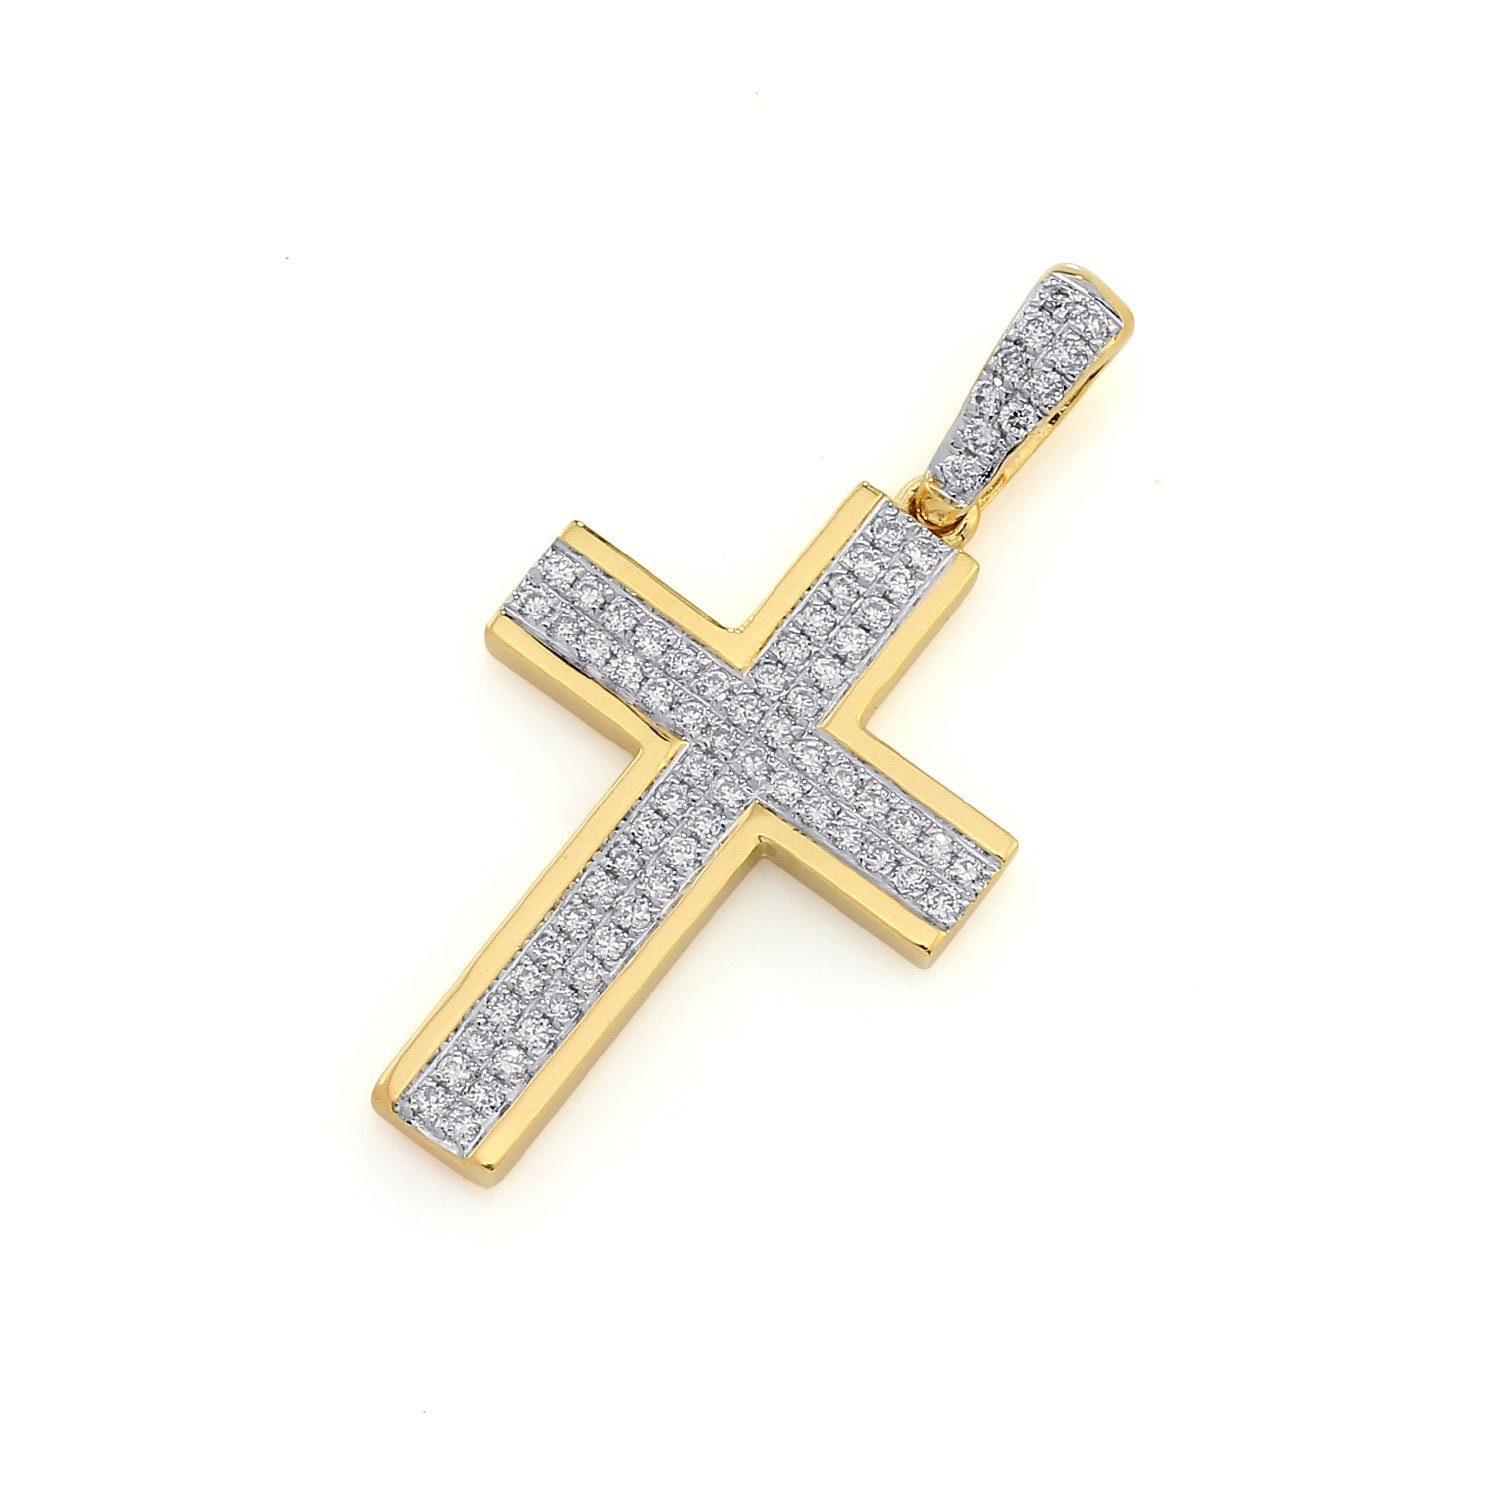 Stella-Jewellery Collier 750er Gelbgold Kreuz Anhänger mit Diamanten 0,16ct (inkl. Etui), Diamanten Kreuz Brillant